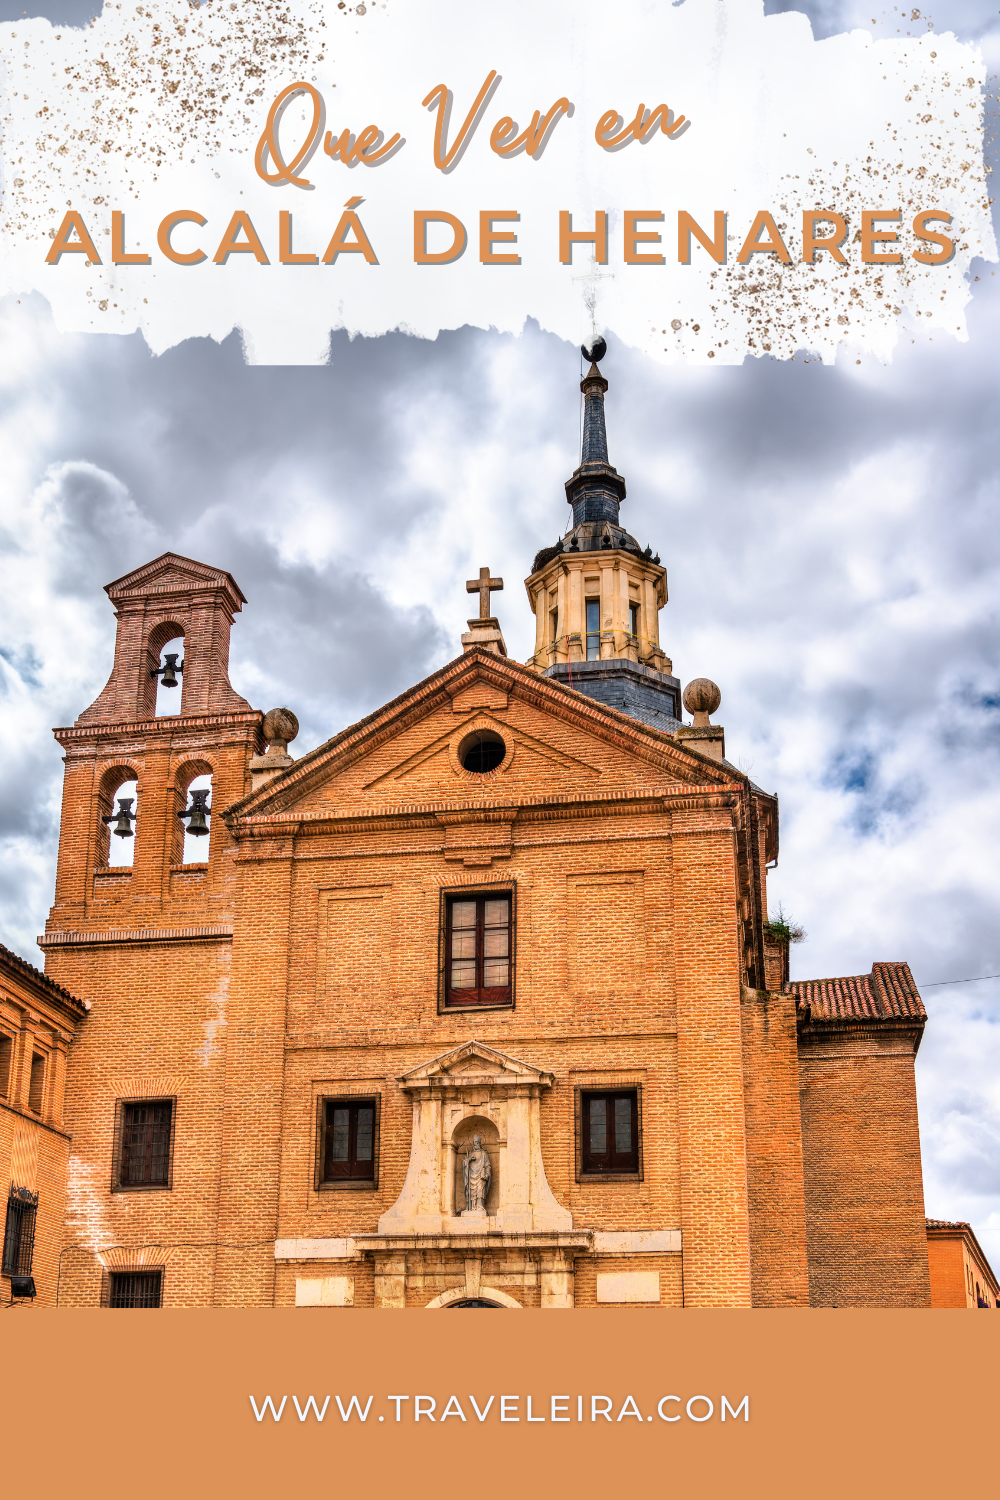 Descubre que ver en Alcalá de Henares la tierra de Miguel de Cervantes, gracias a los chicos de Una Boricua en Madrid.